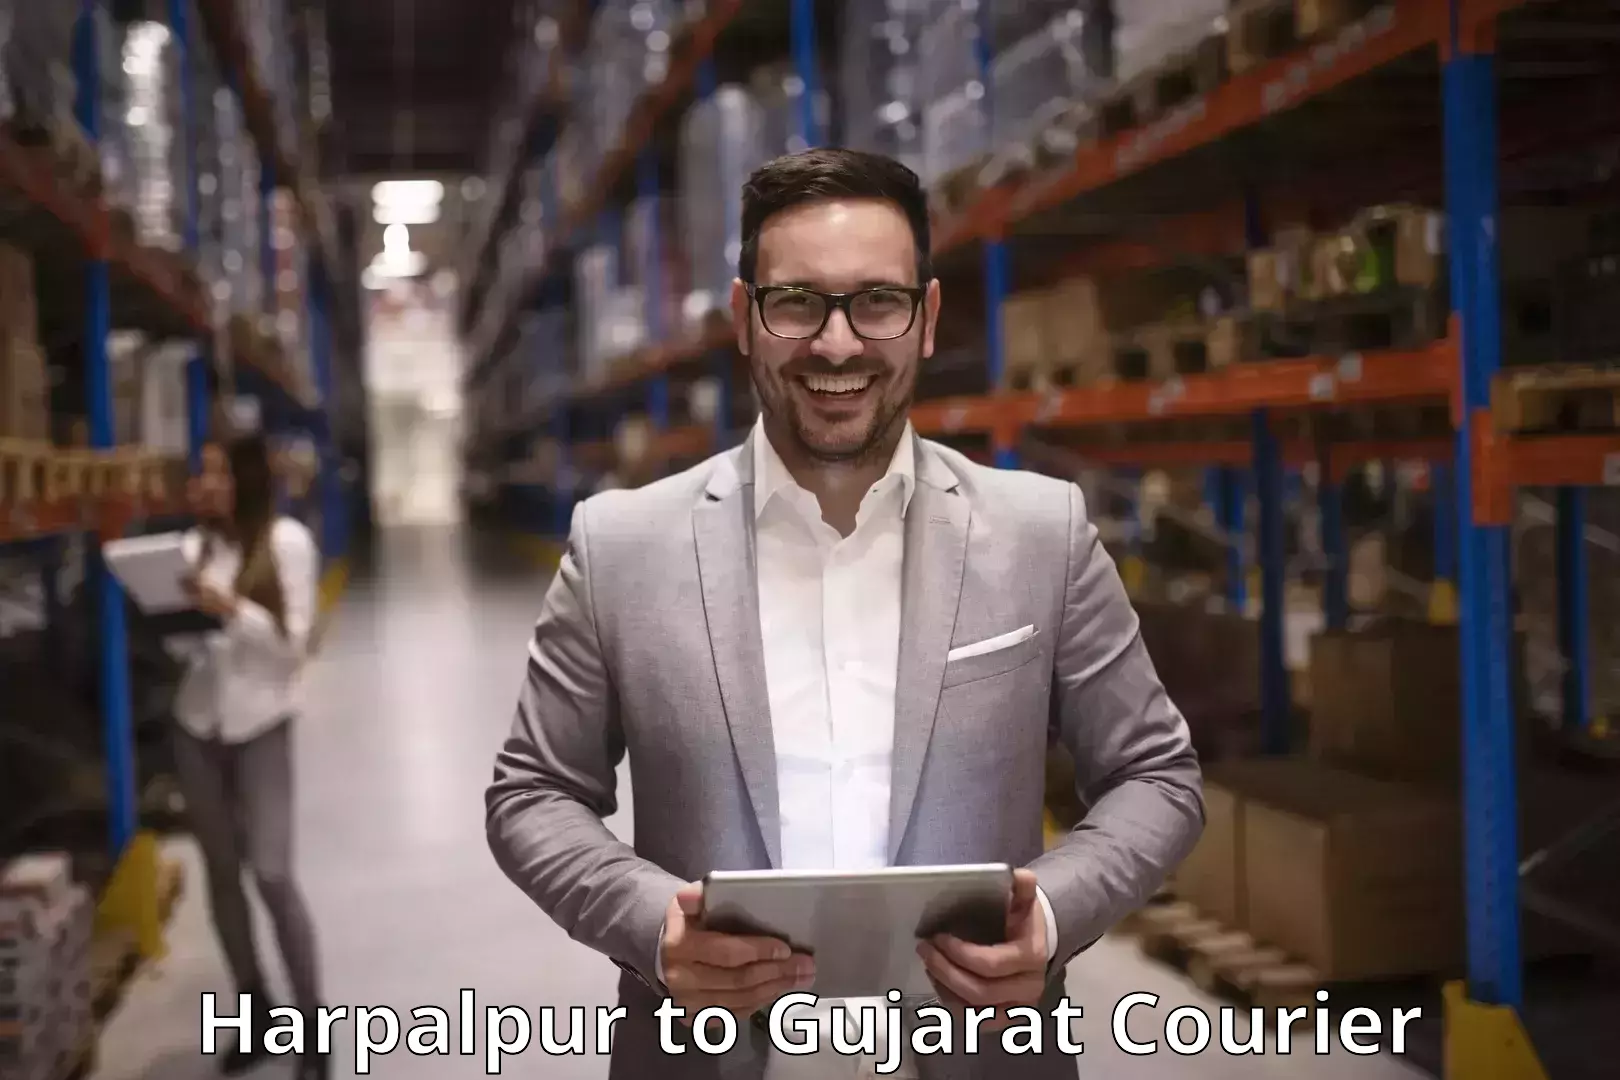 Courier service comparison Harpalpur to Patdi